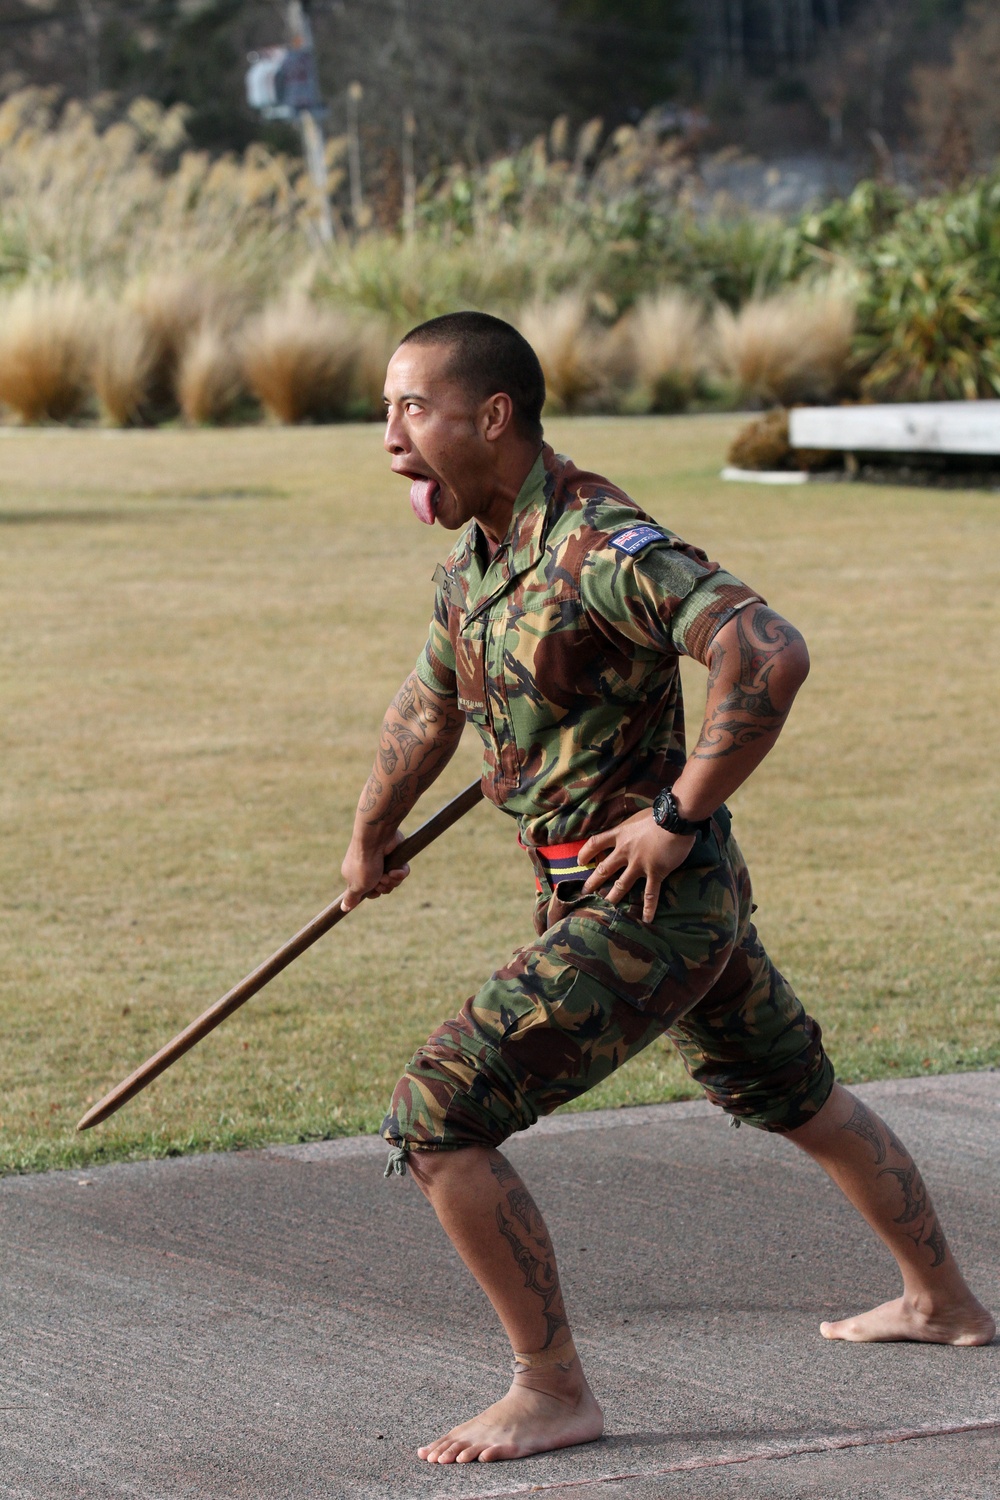 New Zealanders welcome U.S. Marines with Maori warrior